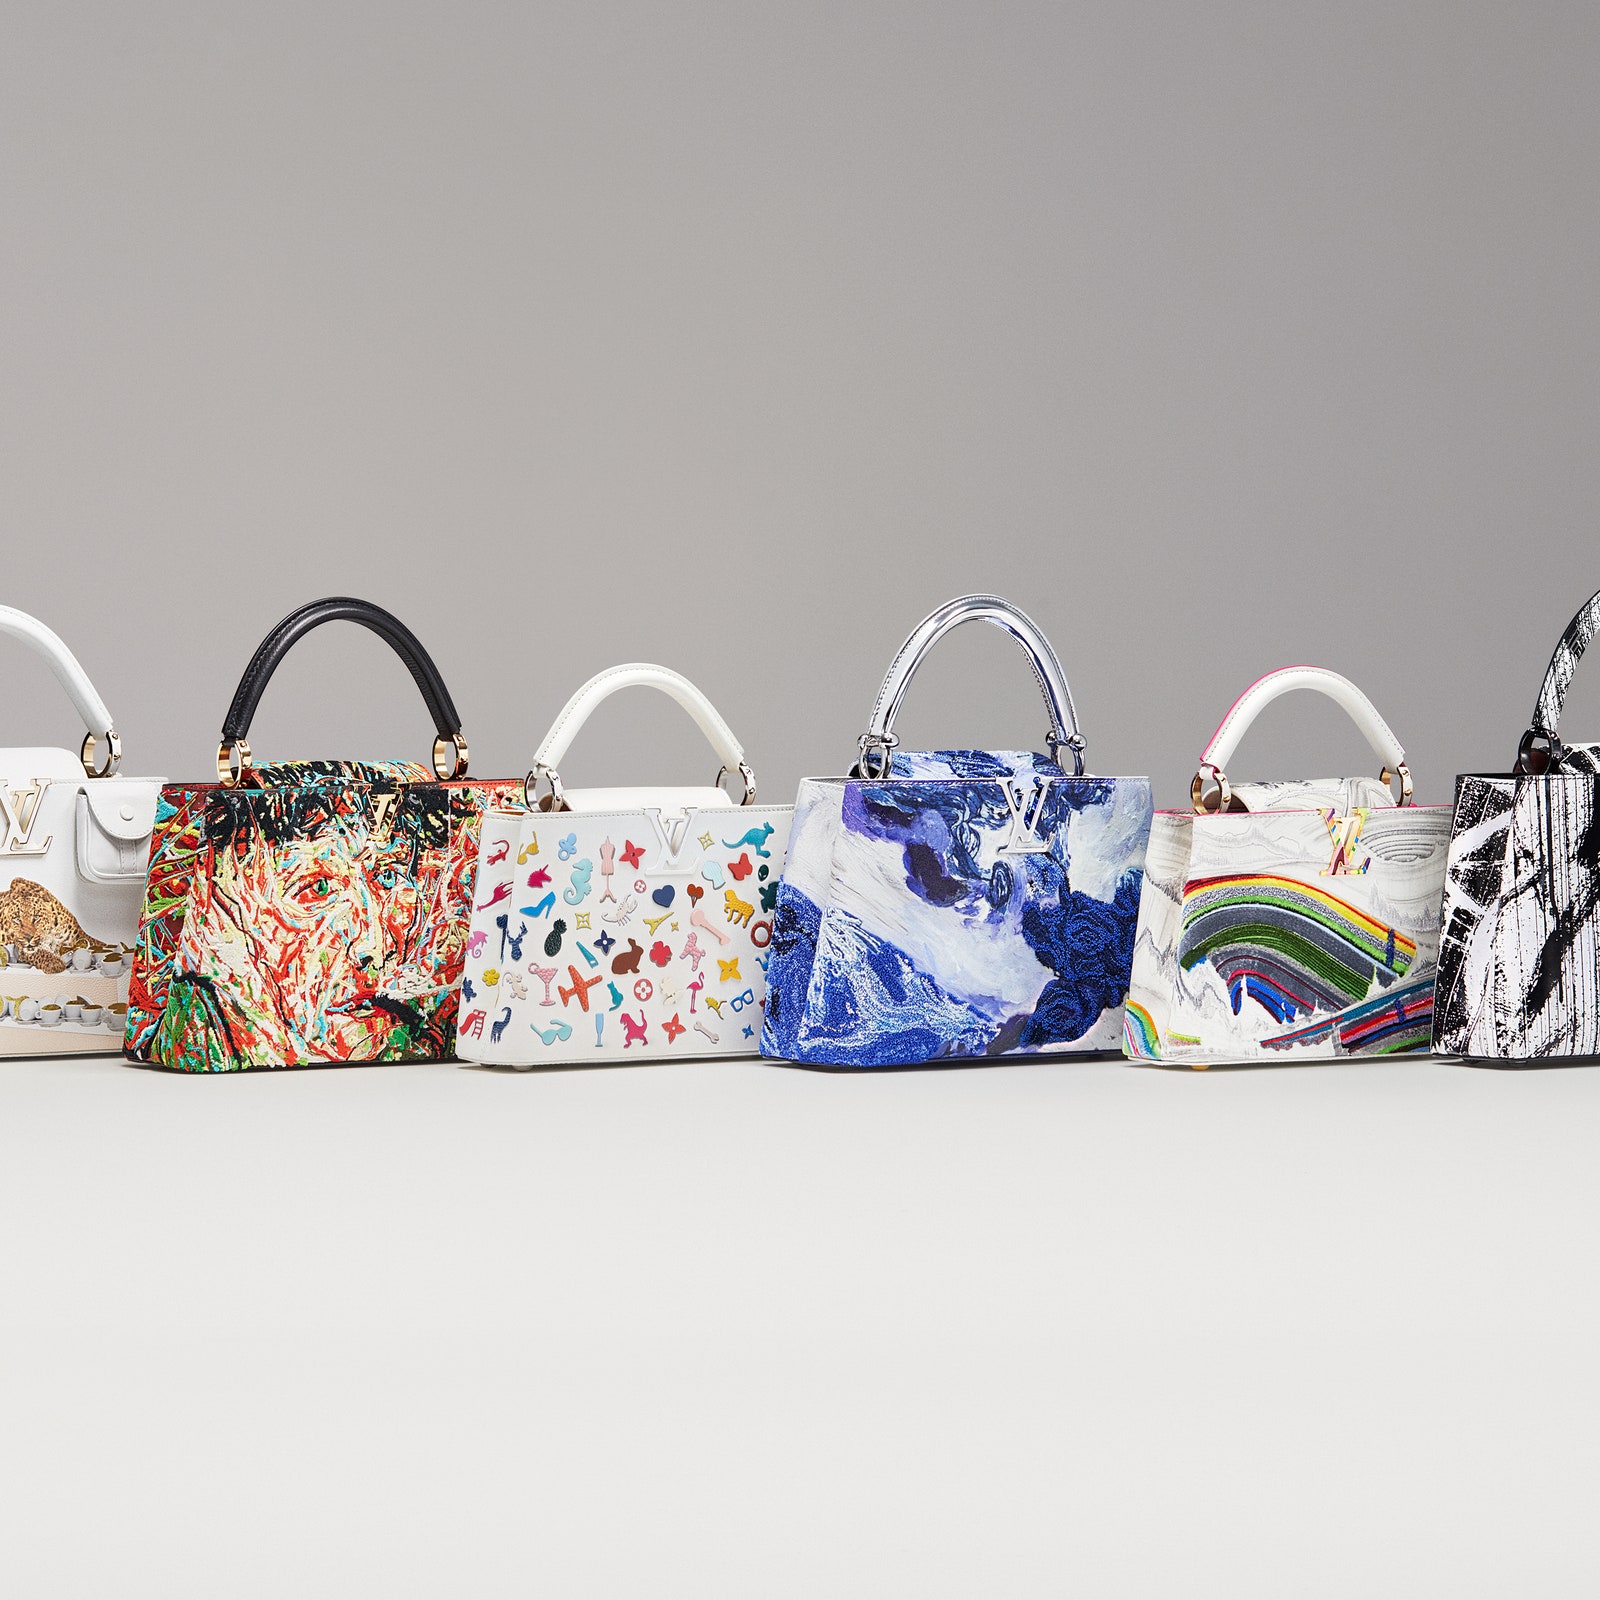 Взгляните на новую коллекцию арт-сумок Louis Vuitton Artycapucines